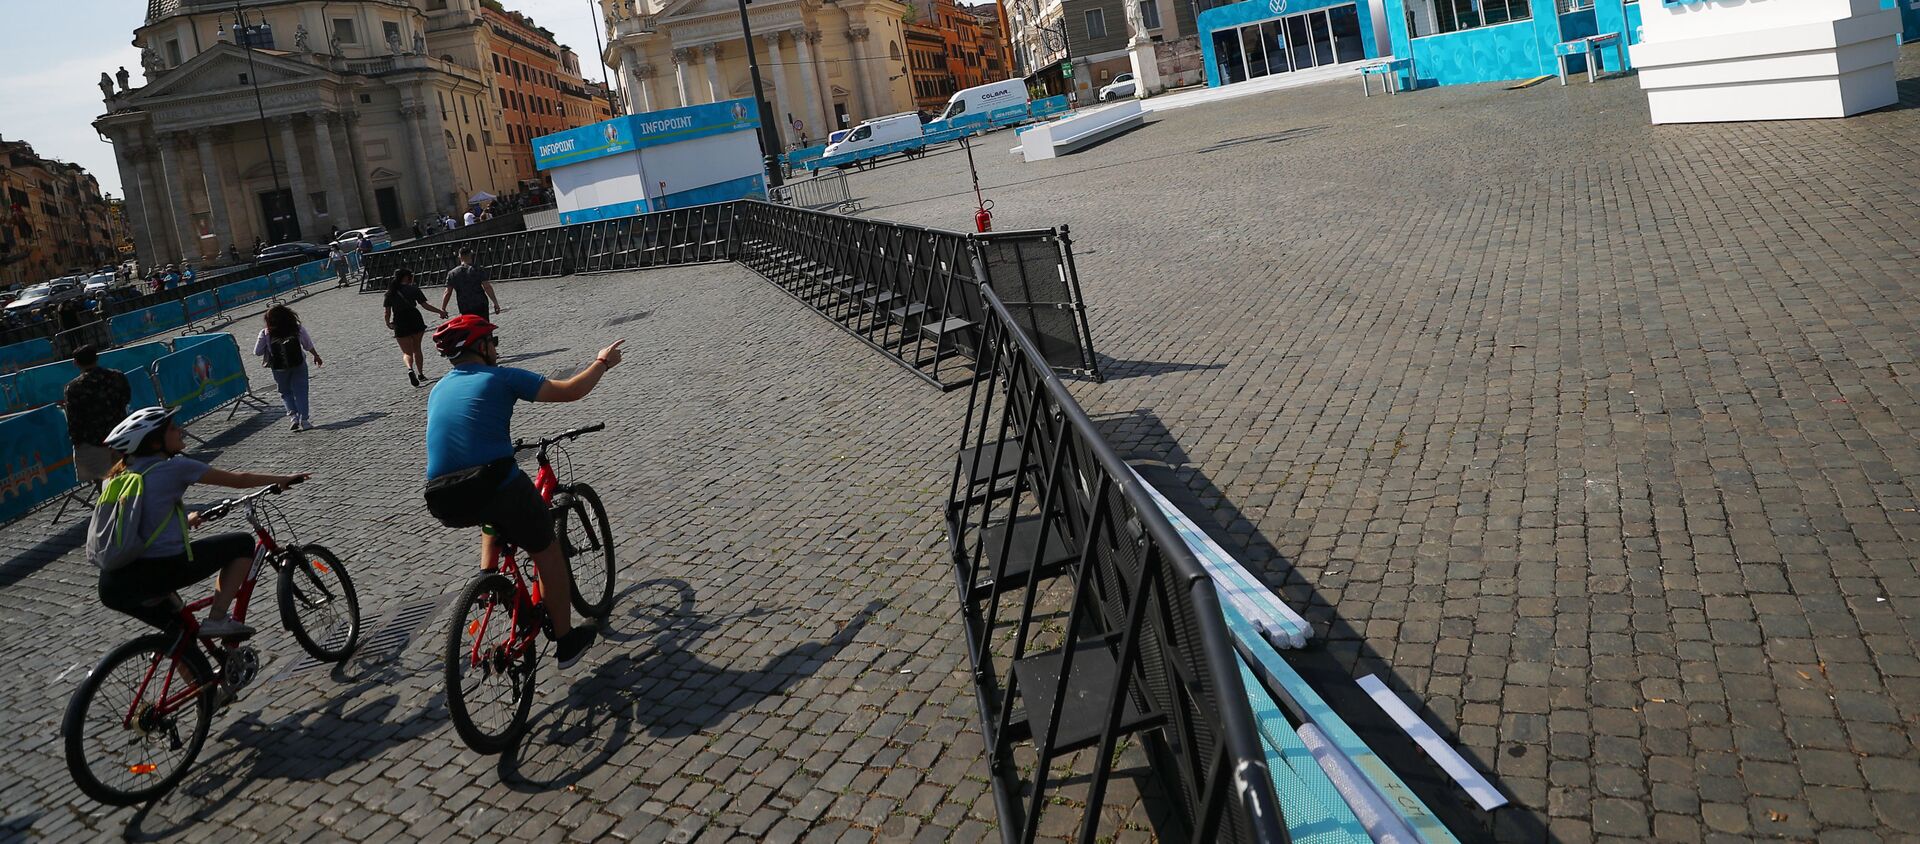 Những người đi xe đạp trong khu vực dành cho người hâm mộ ở Piazza del Popolo ở Rome, khu vực đang được trang trí chuẩn bị  cho UEFA EURO 2020. - Sputnik Việt Nam, 1920, 10.06.2021